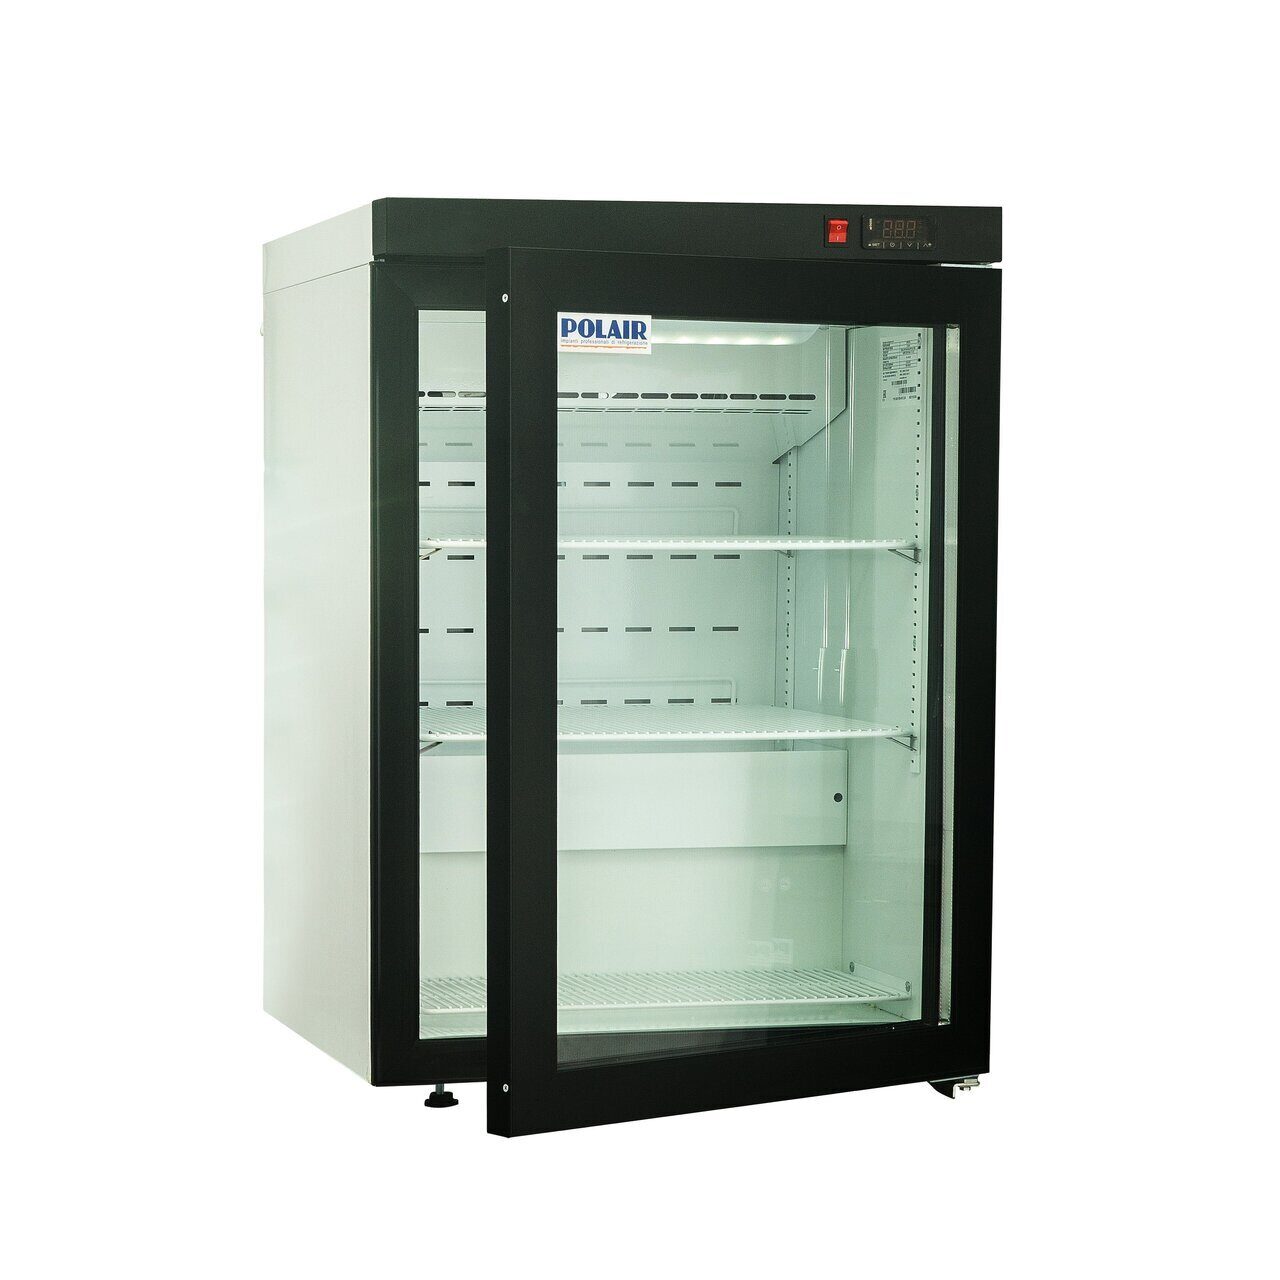 шкаф холодильный среднетемпературный со стеклянной дверью